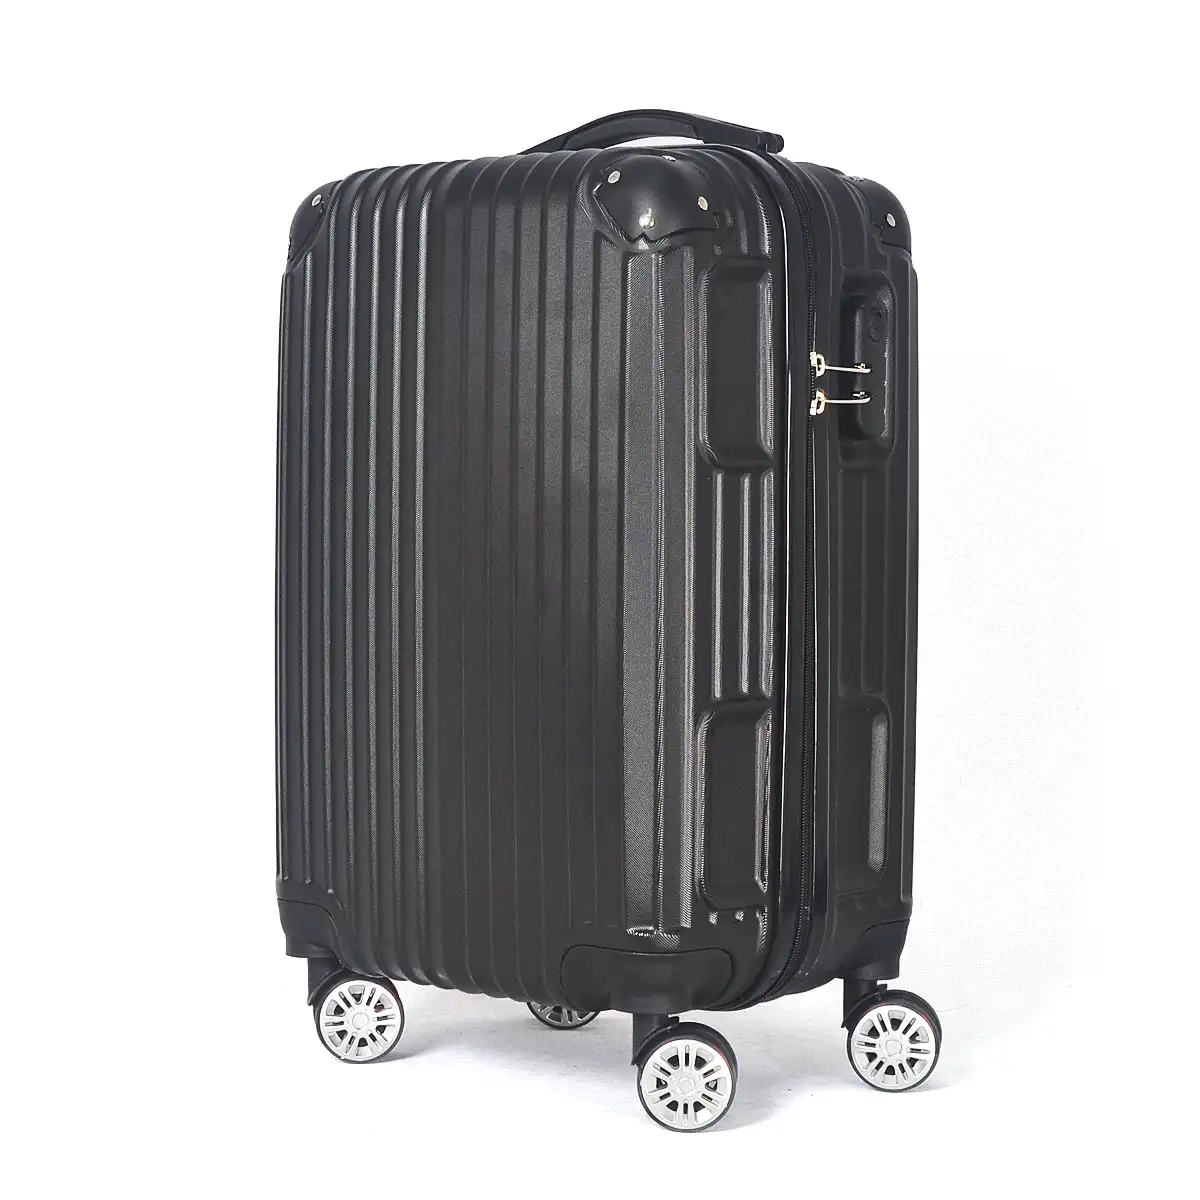 De alta calidad bolsa de equipaje avión trolley caso maleta PC ABS equipaje de viaje